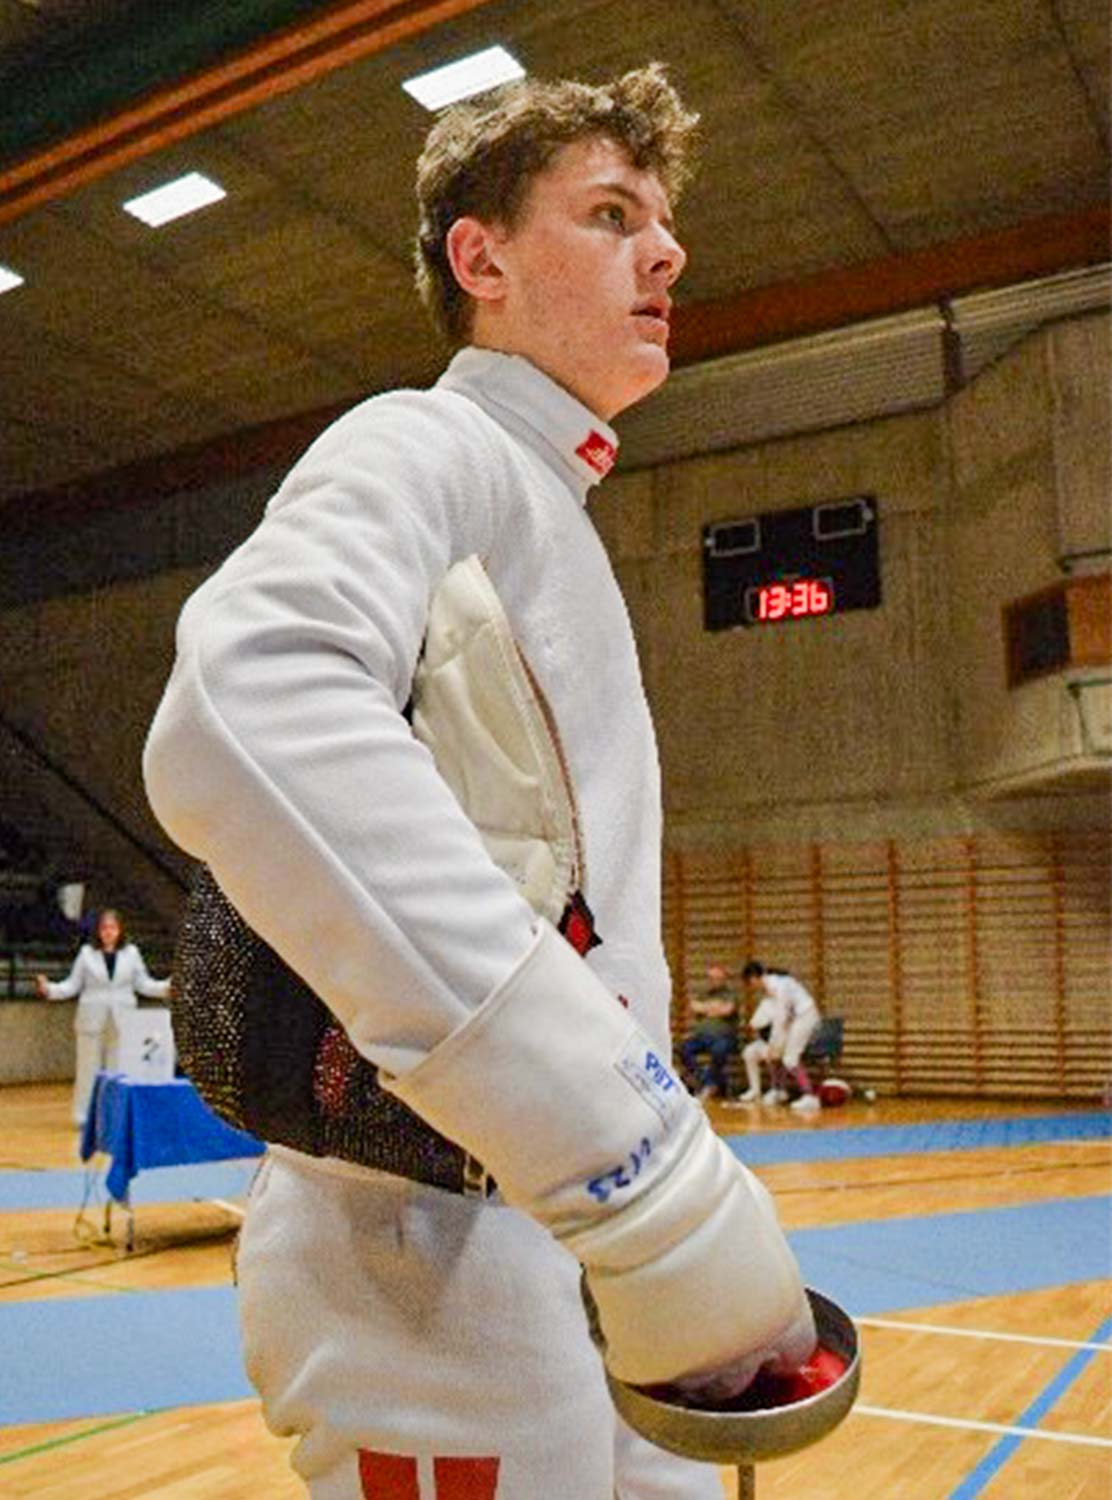 Med en lang række af flotte resultater er Rasmus Ladefoged udtaget til både europa- og verdensmesterskaberne.